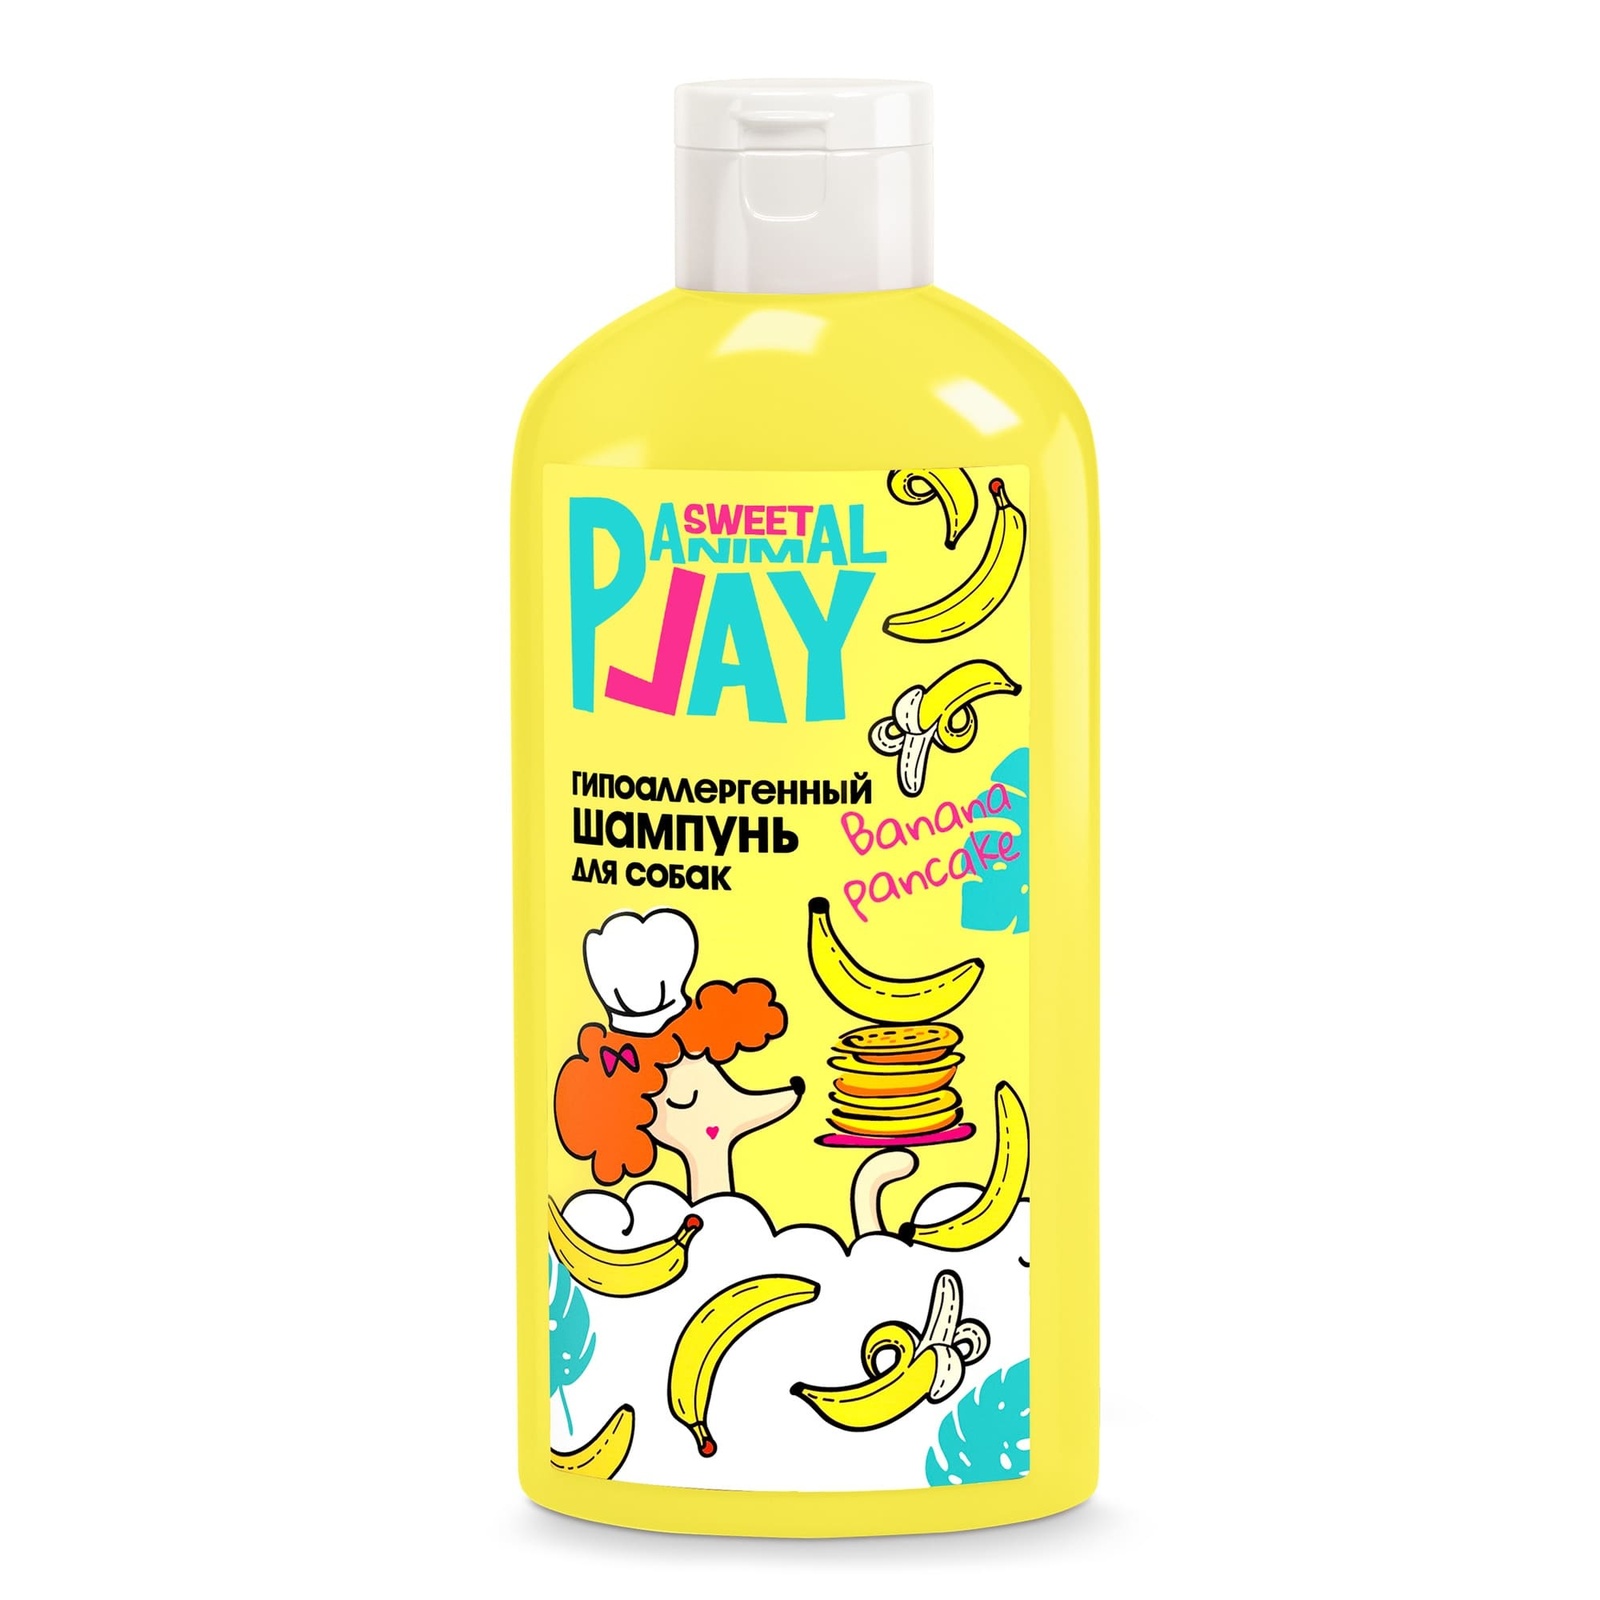 Animal Play Animal Play шампунь гипоаллергенный для собак и кошек, БАНАНОВЫЙ ПАНКЕЙК (300 мл)